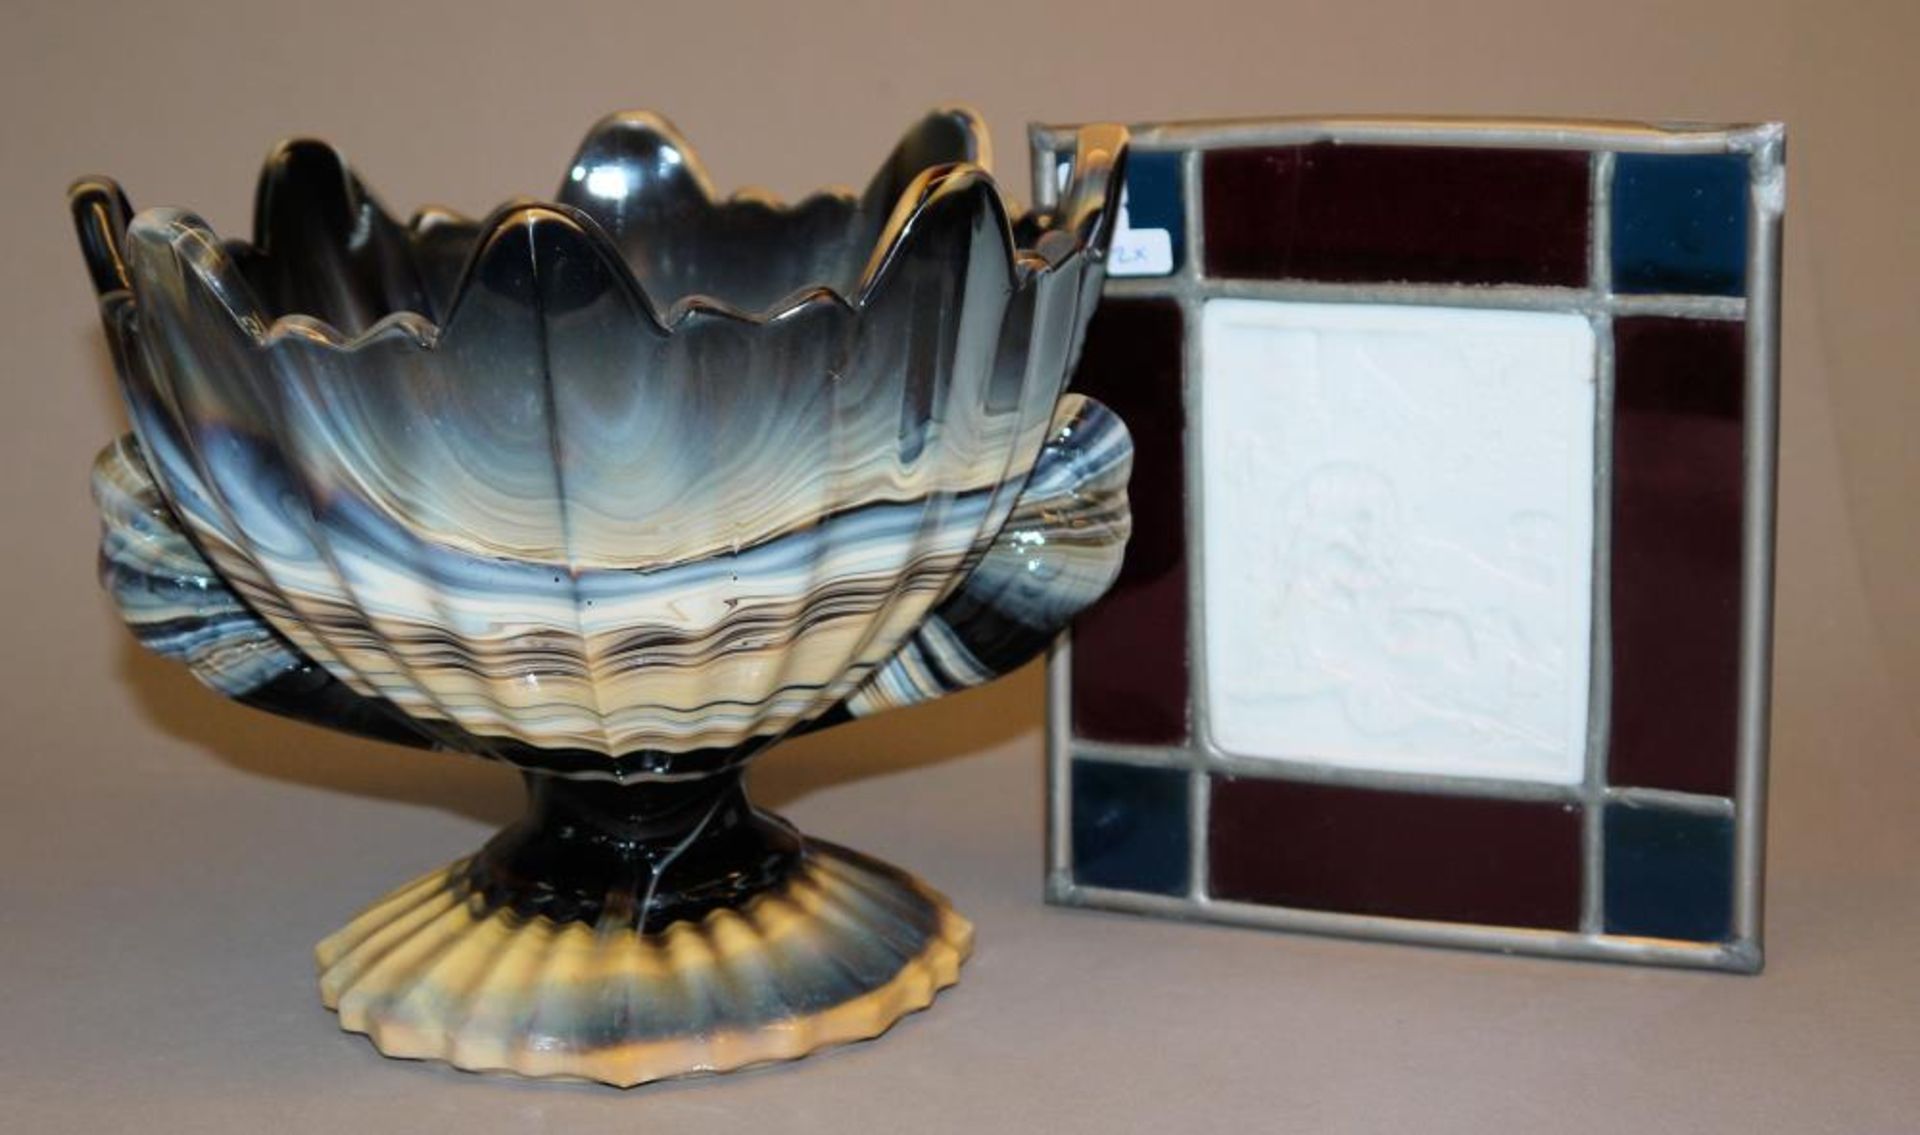 Lithyalinglas-Vase um 1920 & bleiverglaste Lithophanie um 1900 Englische Steinglasvase um 1920 in